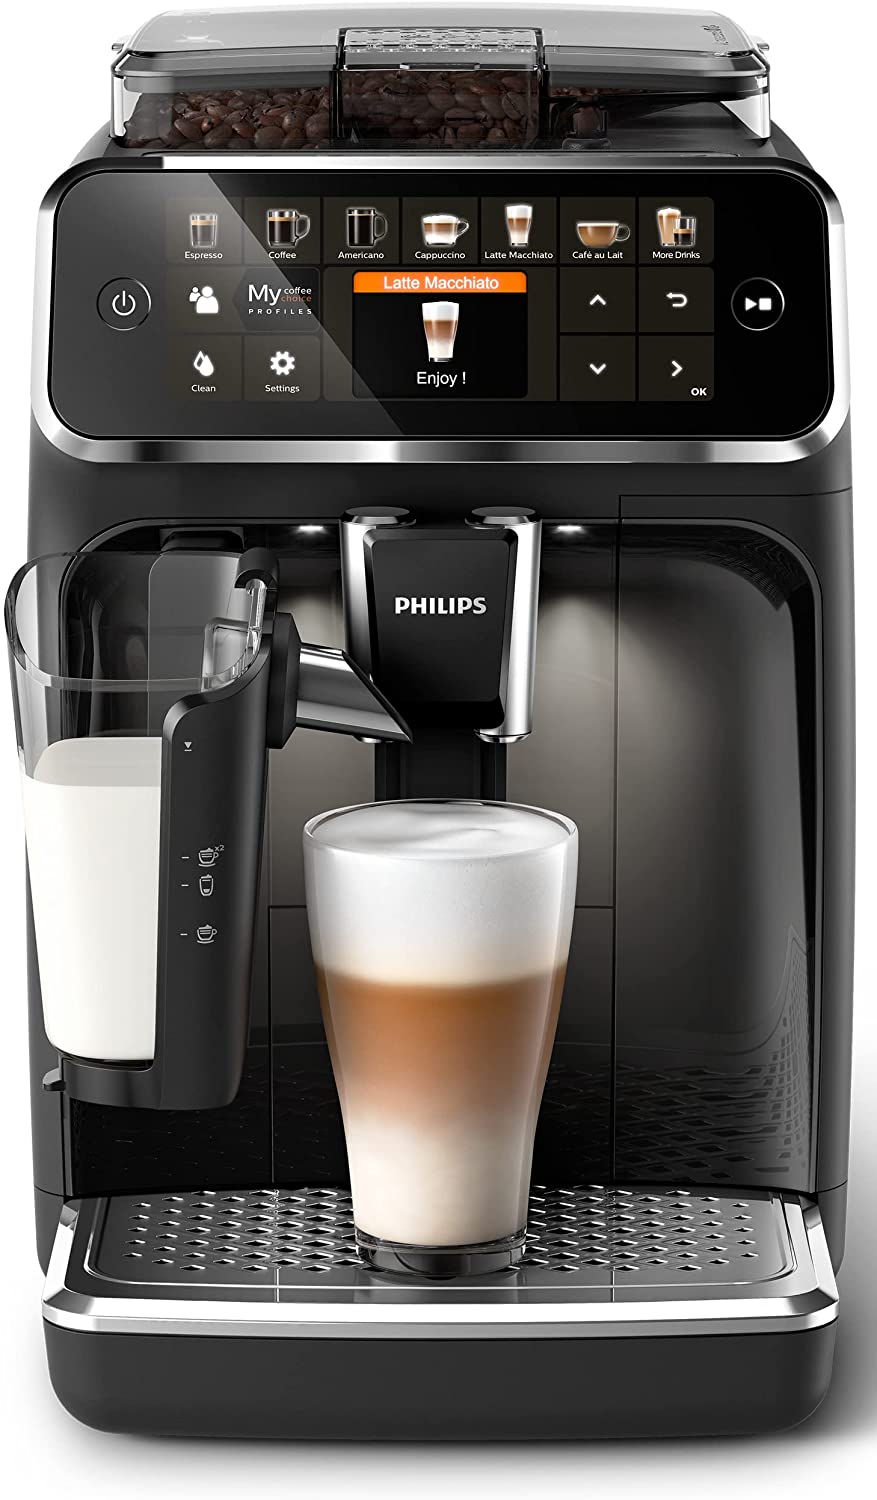 Philips Domestic Appliances Philips 5400 Serie EP5441/50 Kaffeevollautomat, 12 Kaffeespezialitäten (Lat